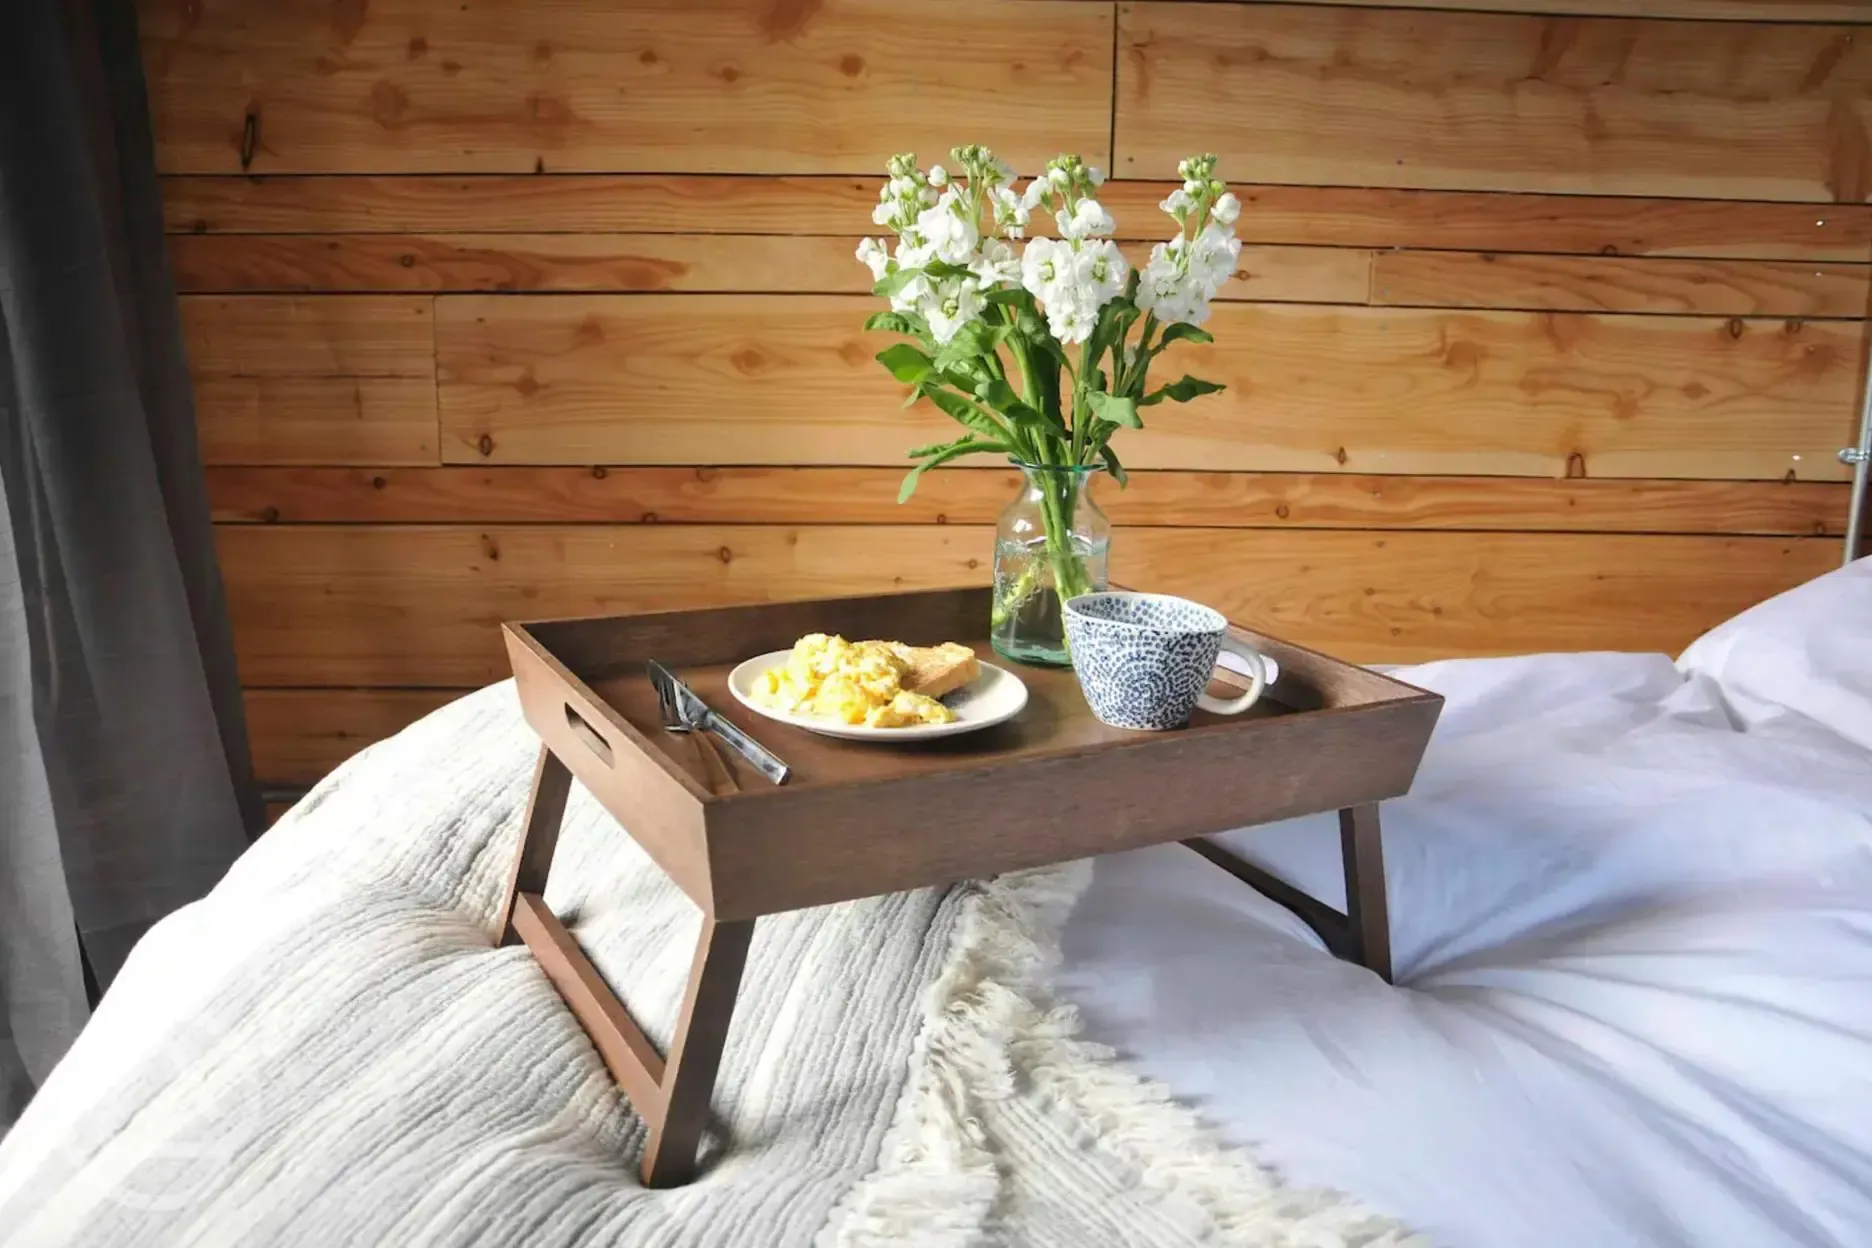 Cabin breakfast in bed